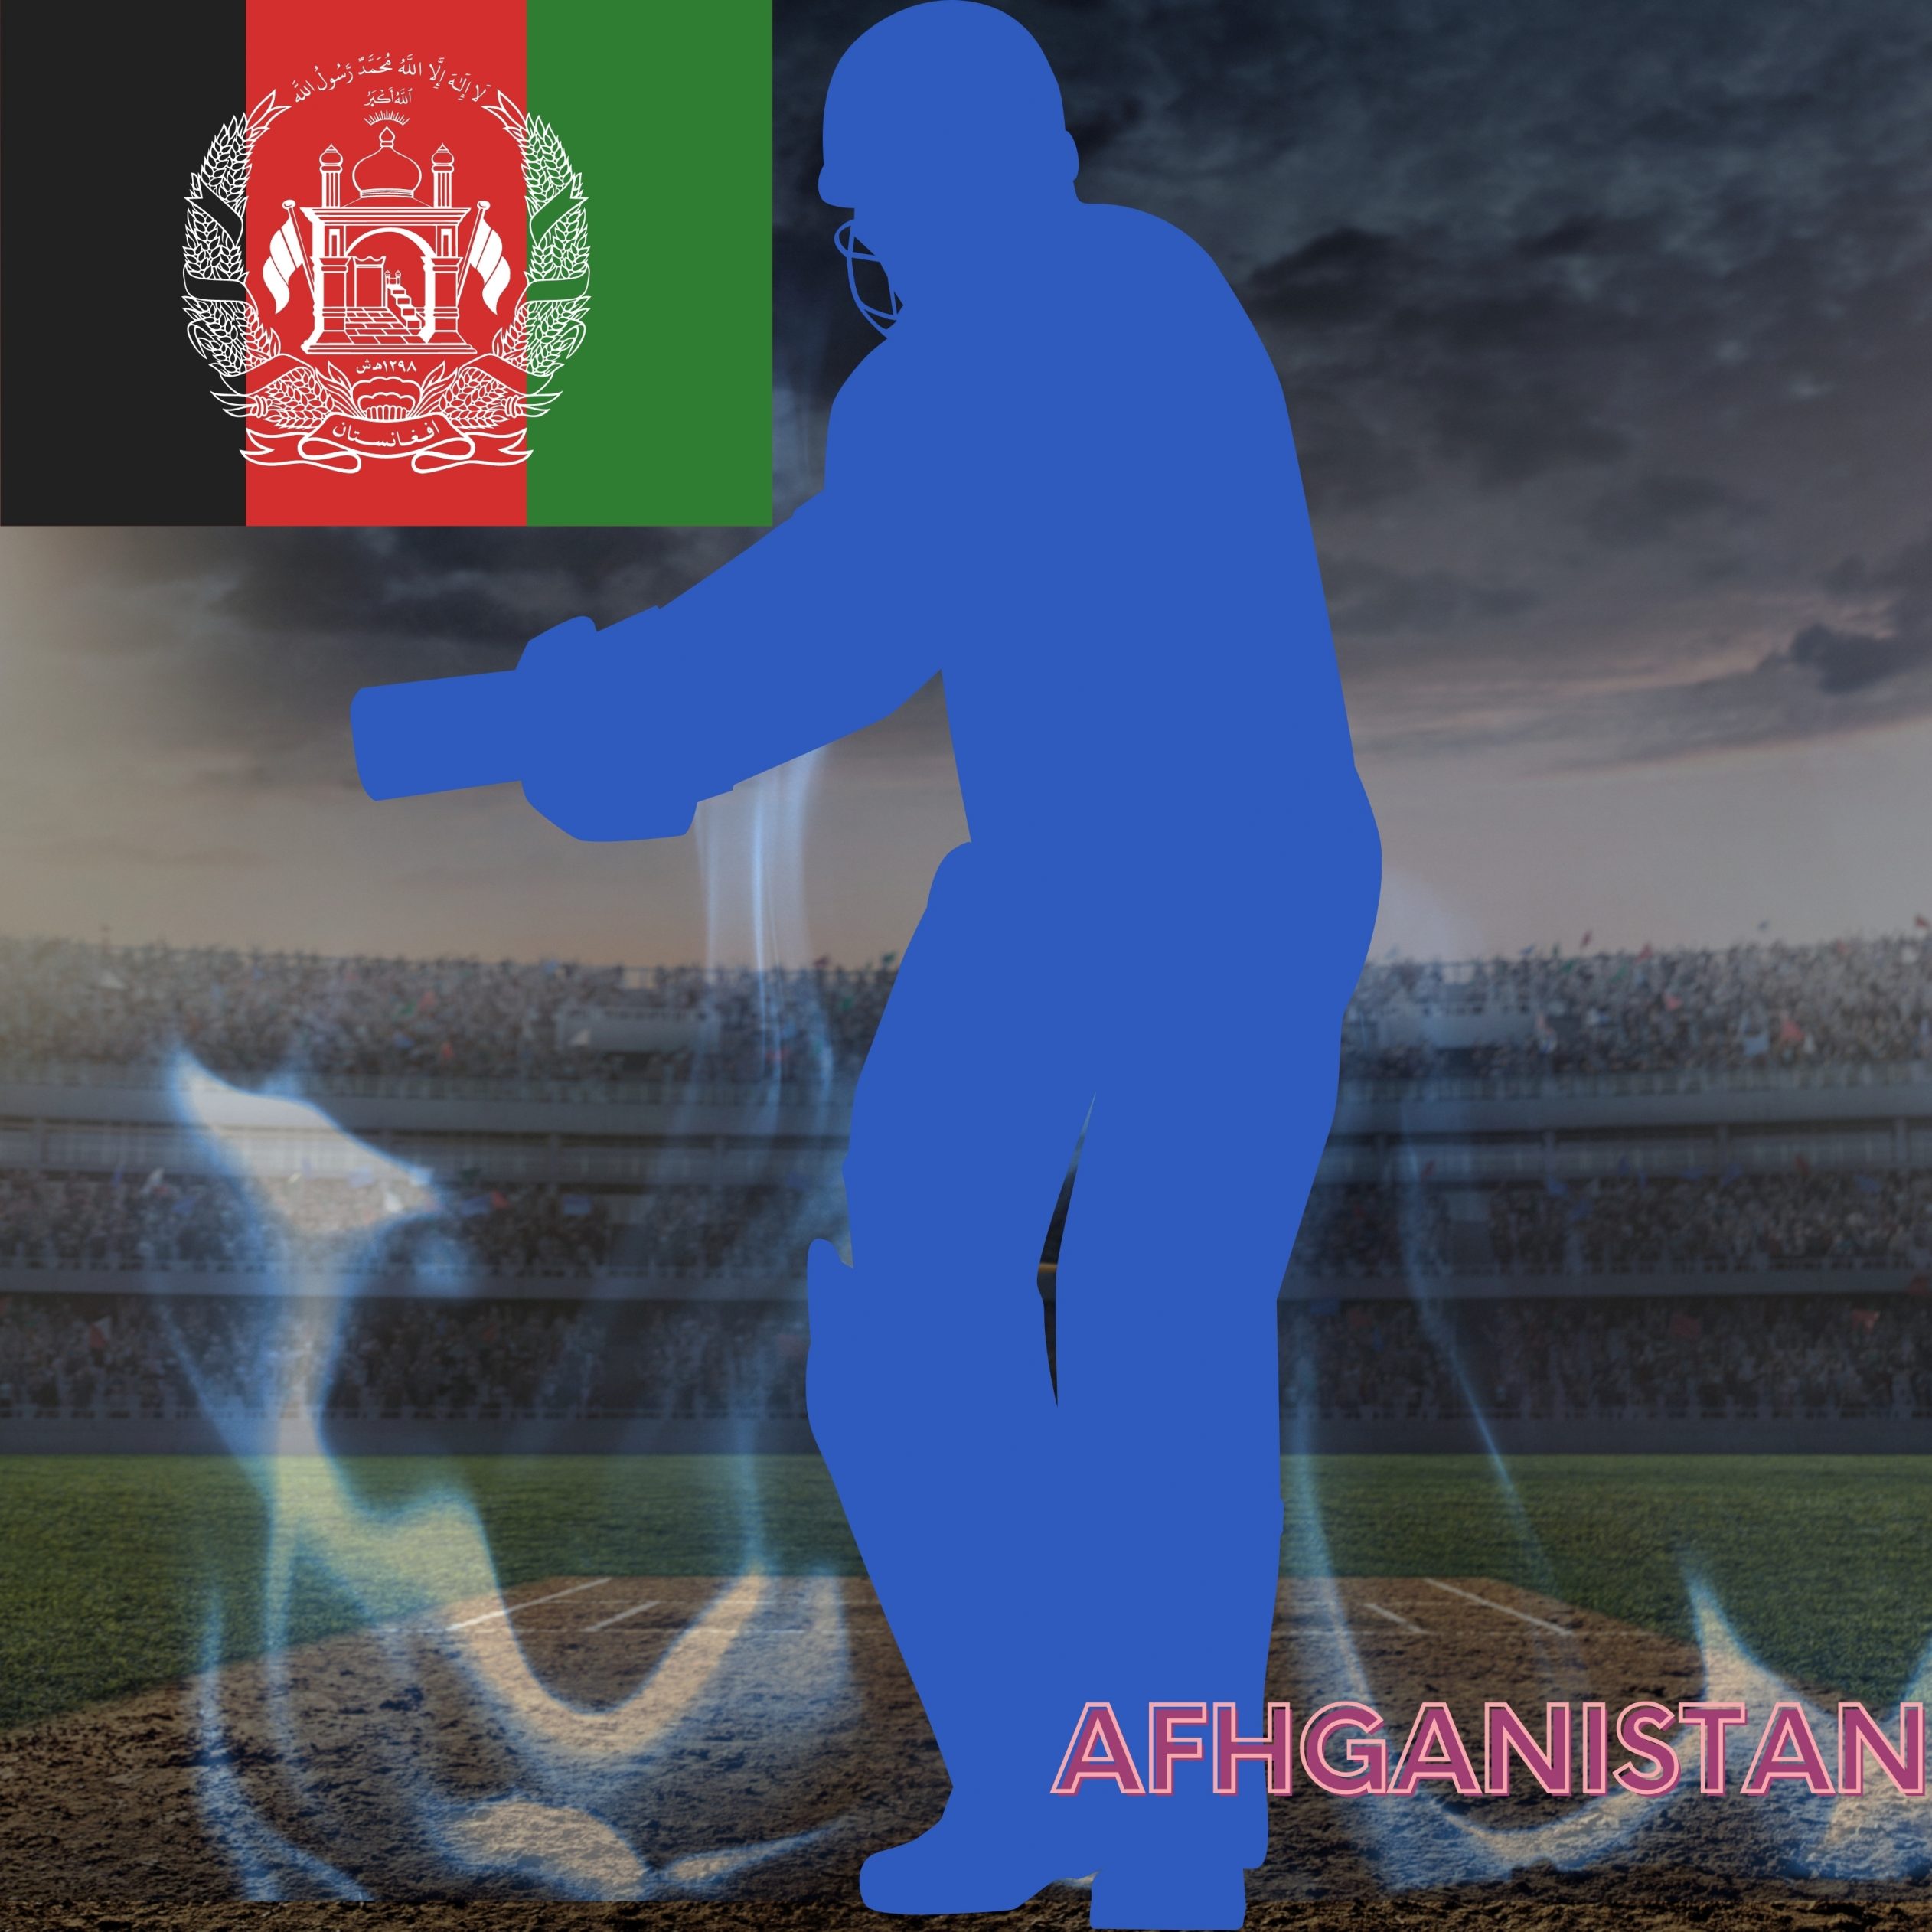 2524x2524 Parallax wallpaper 4k Afhganistan Cricket Stadium iPad Wallpaper 2524x2524 pixels resolution